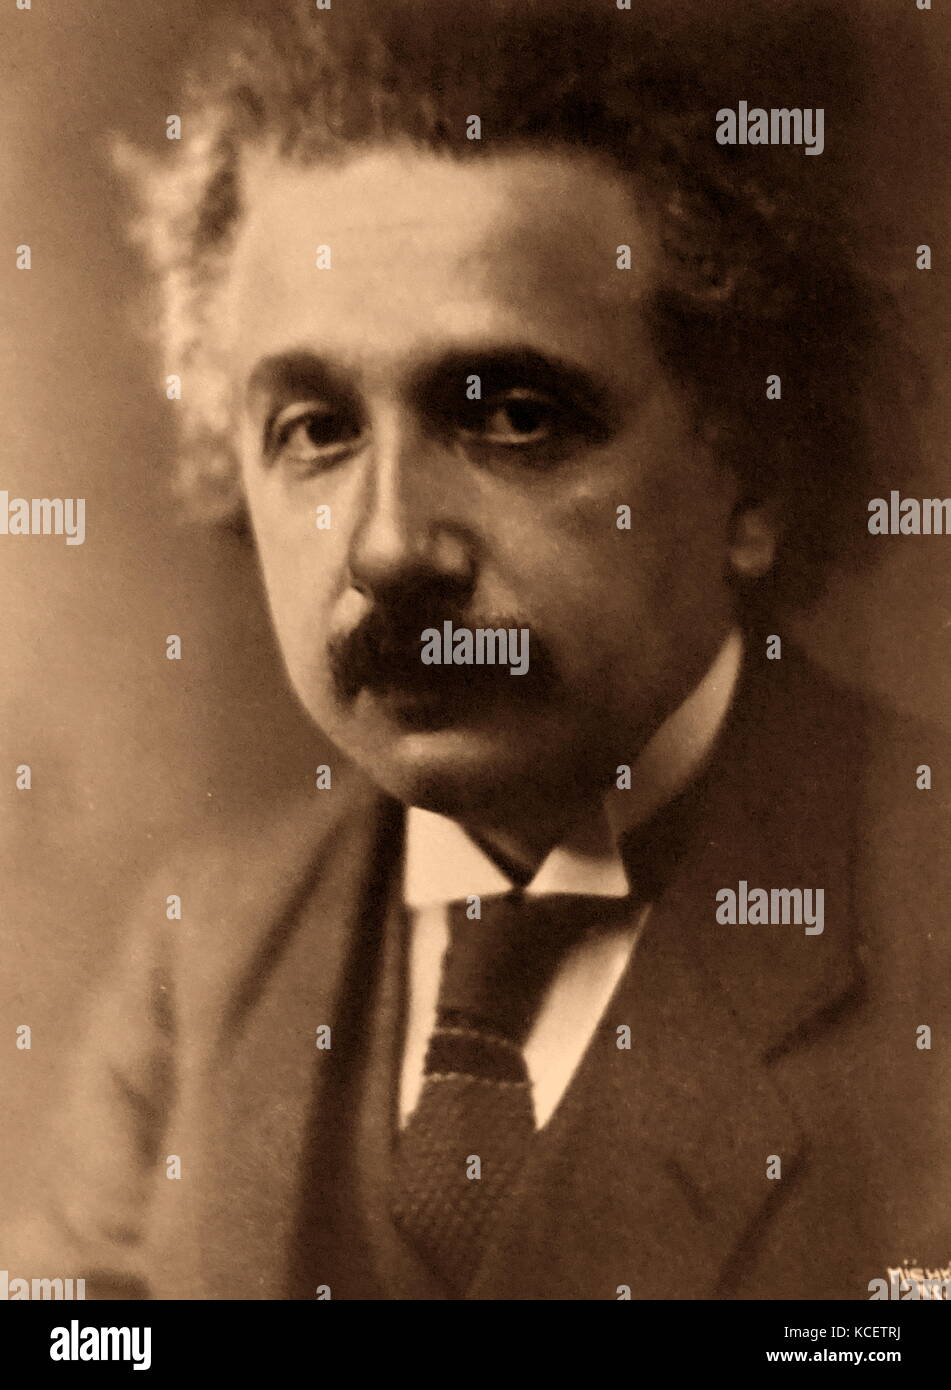 Albert Einstein (1879 - 1955), un físico teórico nacido en Alemania. Él desarrolló la teoría general de la relatividad, uno de los dos pilares de la física moderna (junto a la mecánica cuántica). Foto de stock